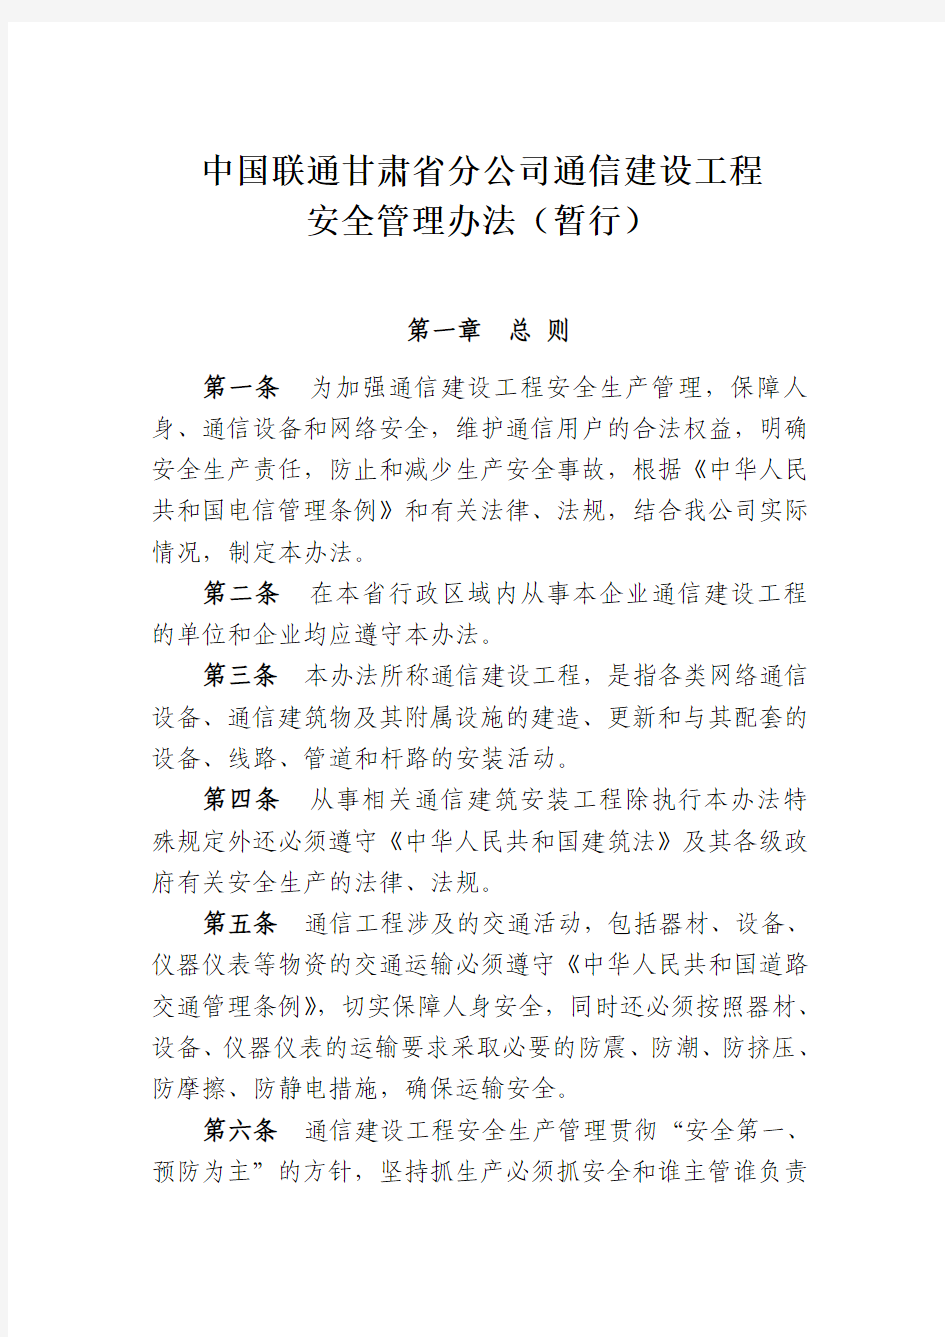 中国联通甘肃省分公司通信建设工程安全管理办法